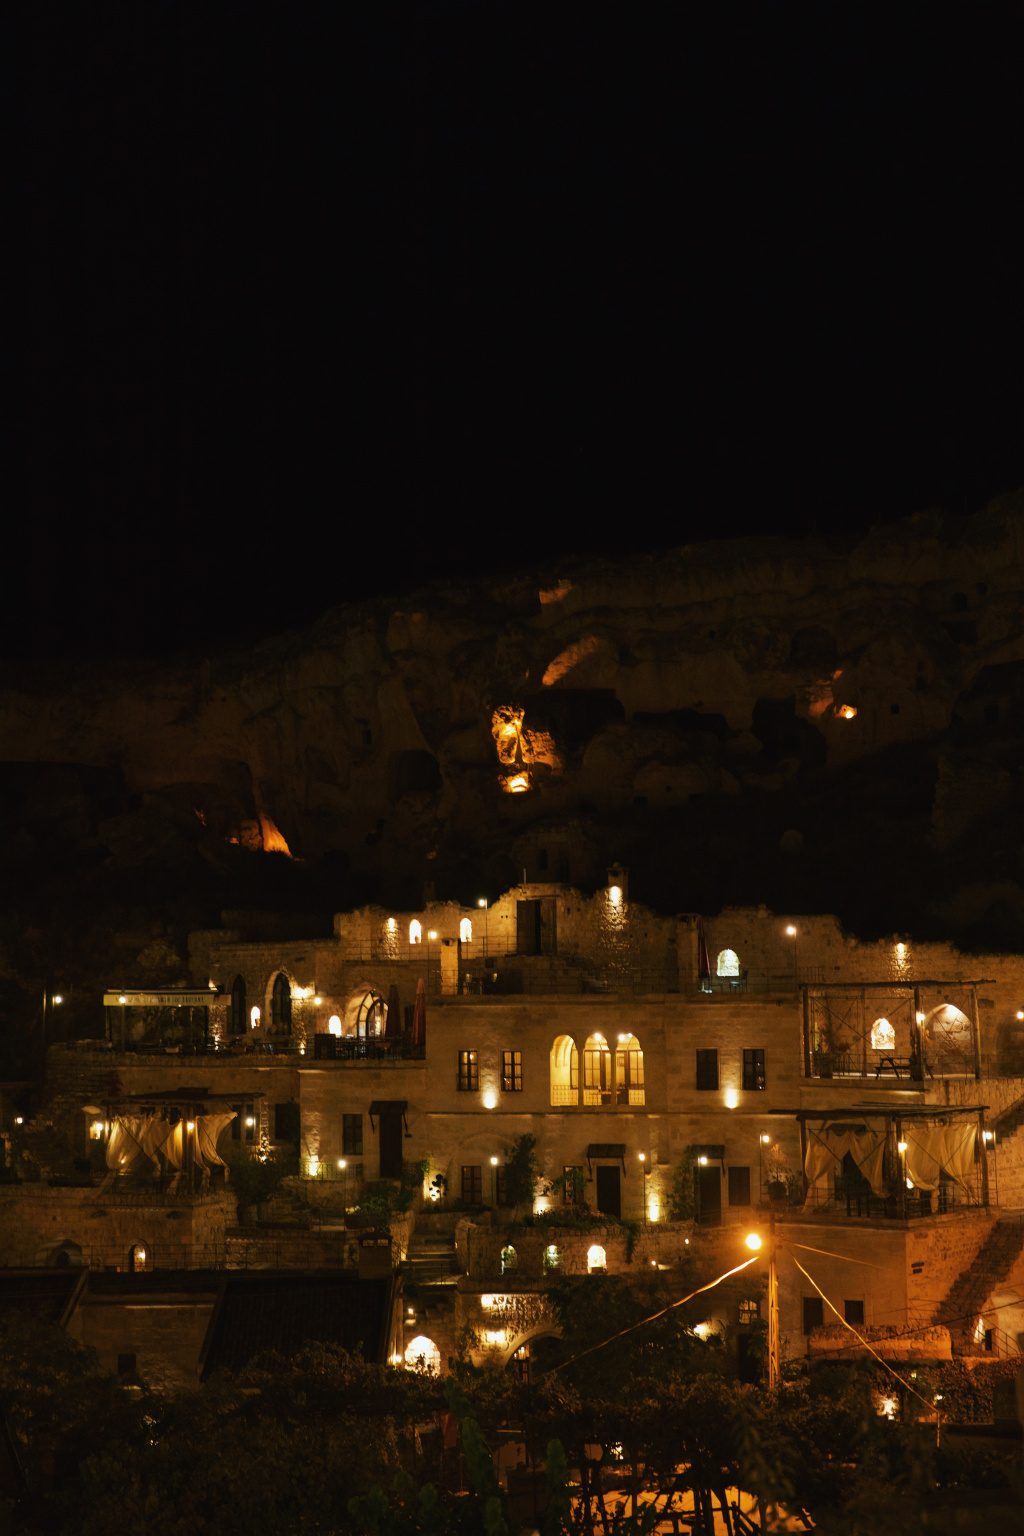 GALERIE FOTO: Locurile pe care trebuie să le vizitezi în Cappadocia pe timp de toamnă